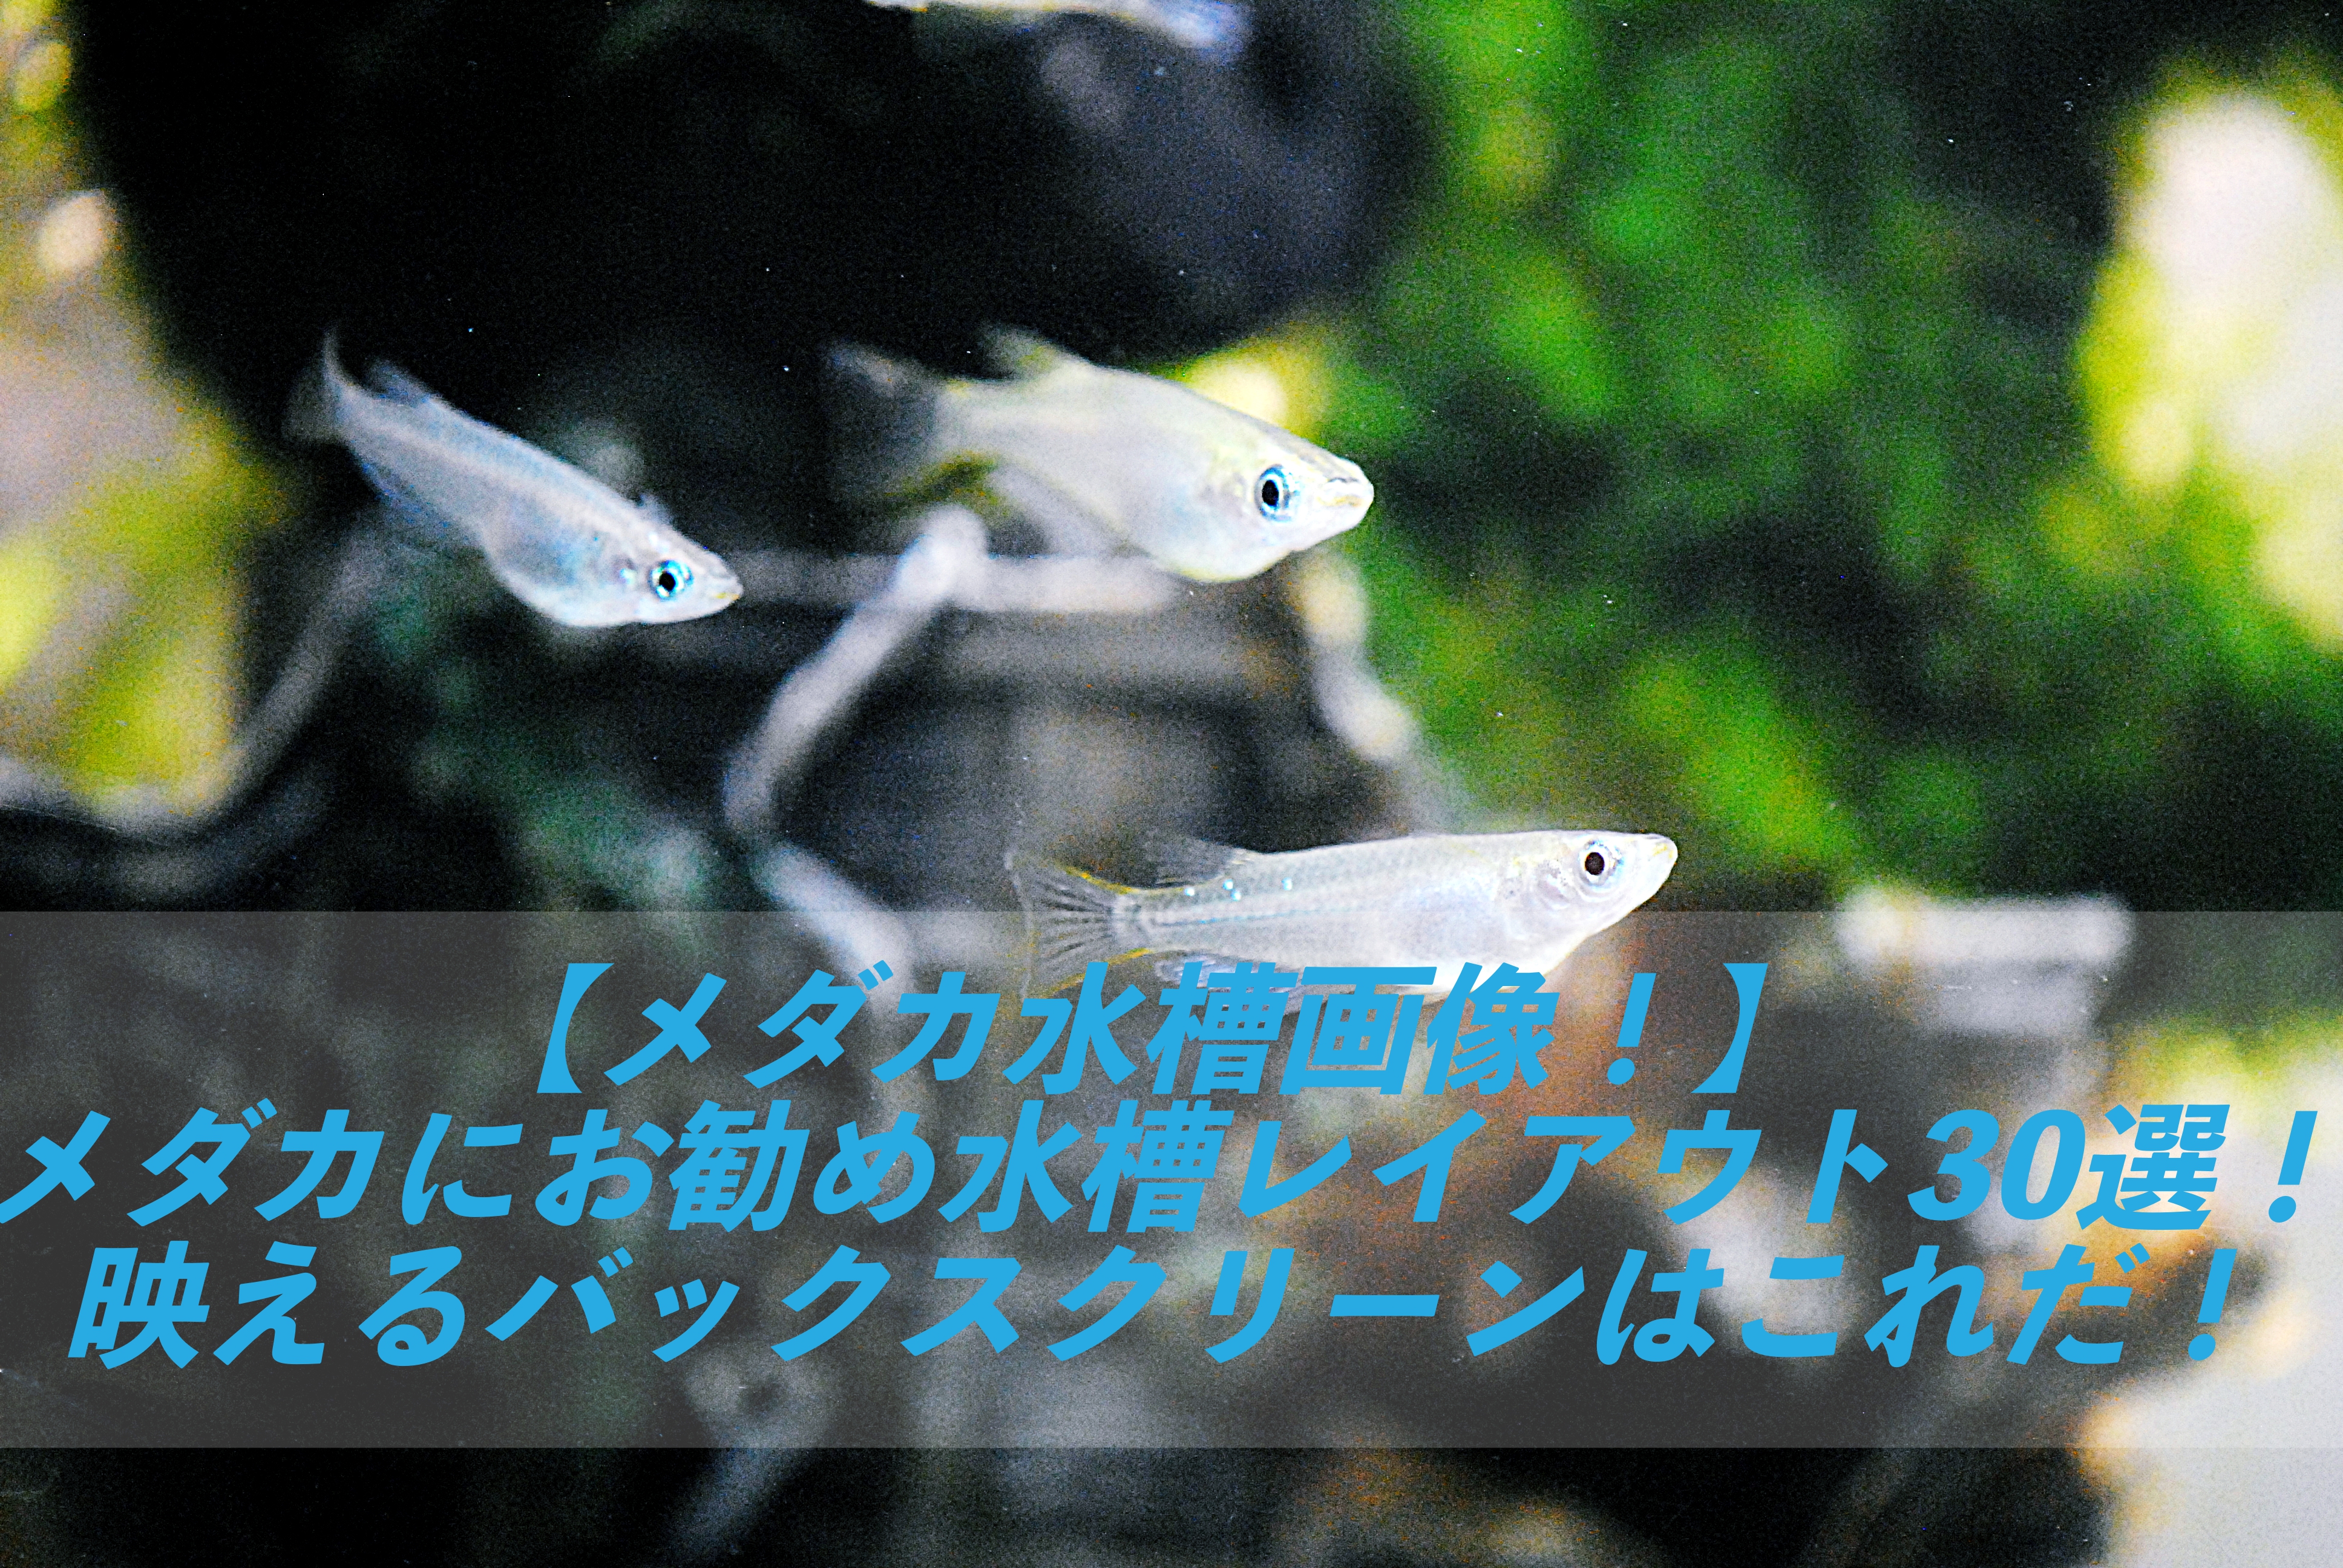 メダカ水槽画像 淡水魚 メダカにお勧め水槽レイアウト30選 映える水草バックスクリーンはこれだ 屋外水槽 しょーとかっとブログ